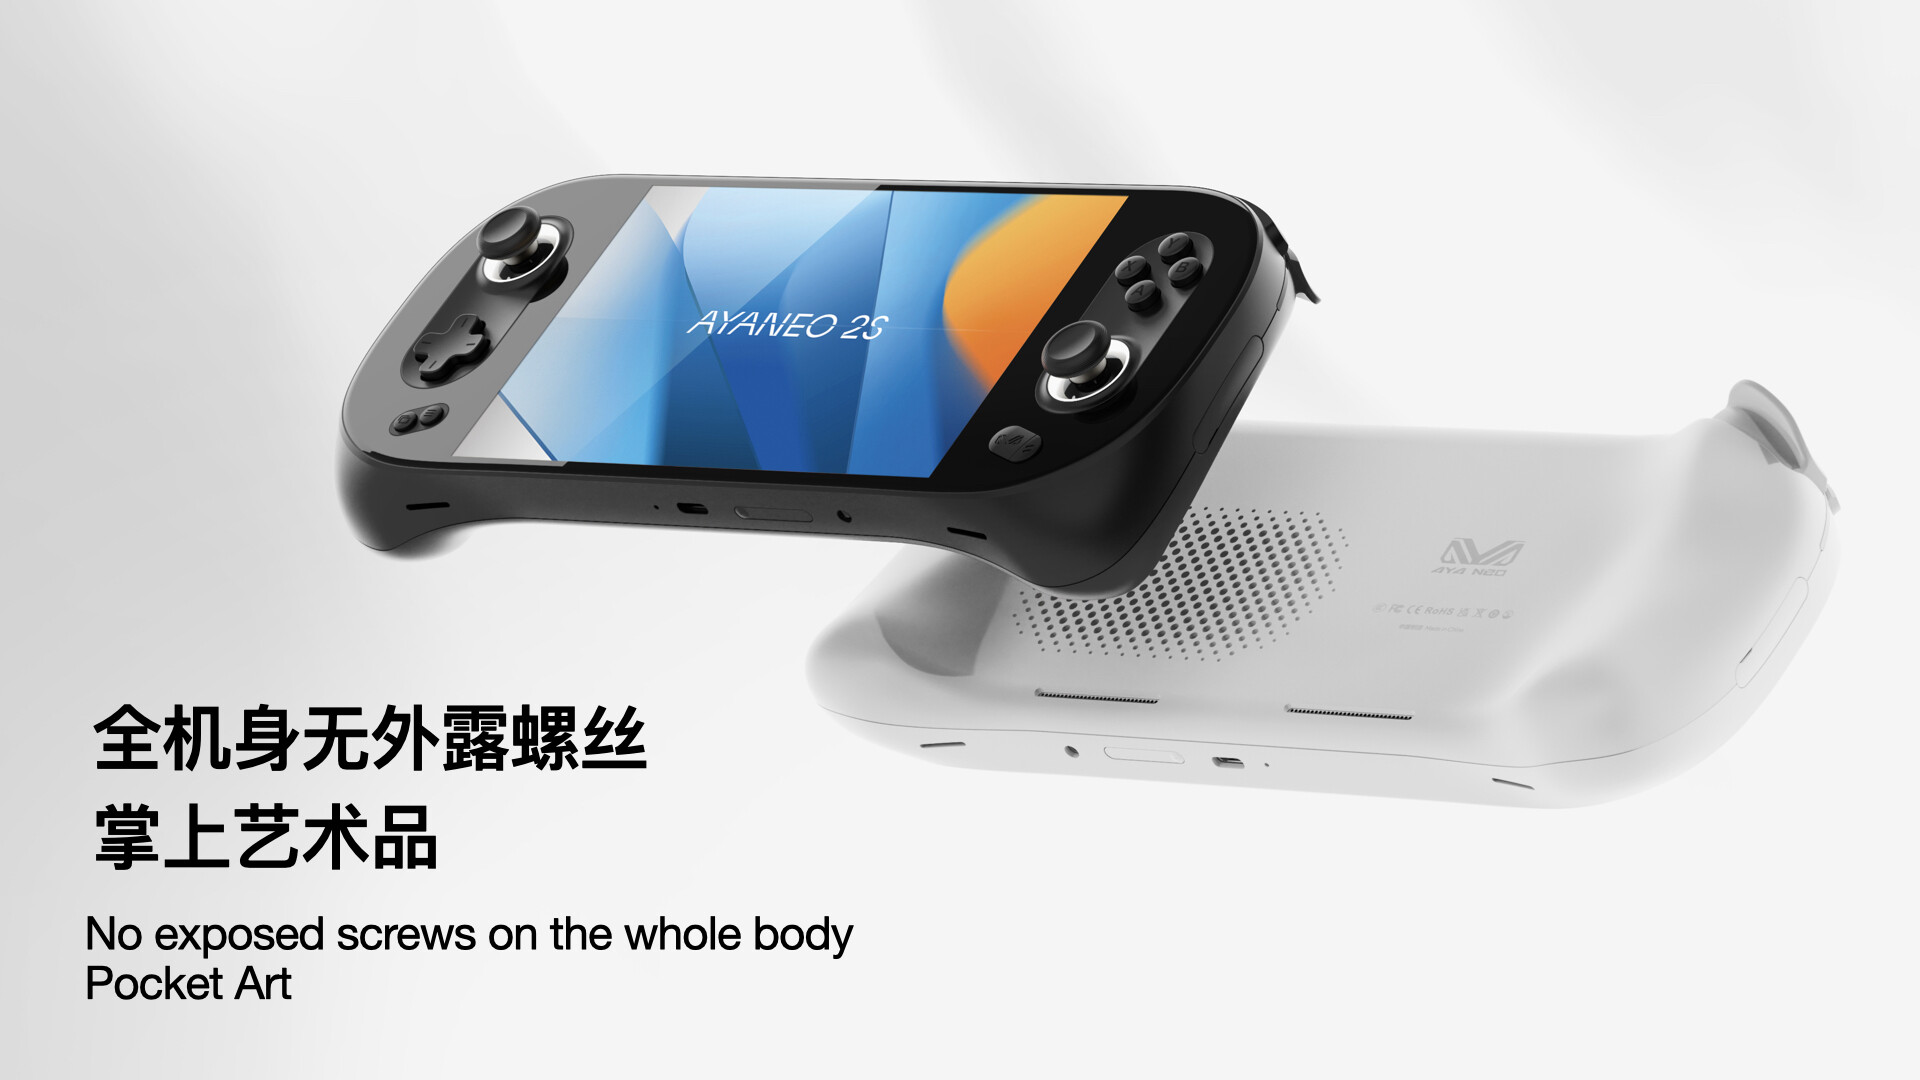 El Pocket AIR de Ayaneo marca el primer dispositivo portátil de juegos de la compañía para Android.